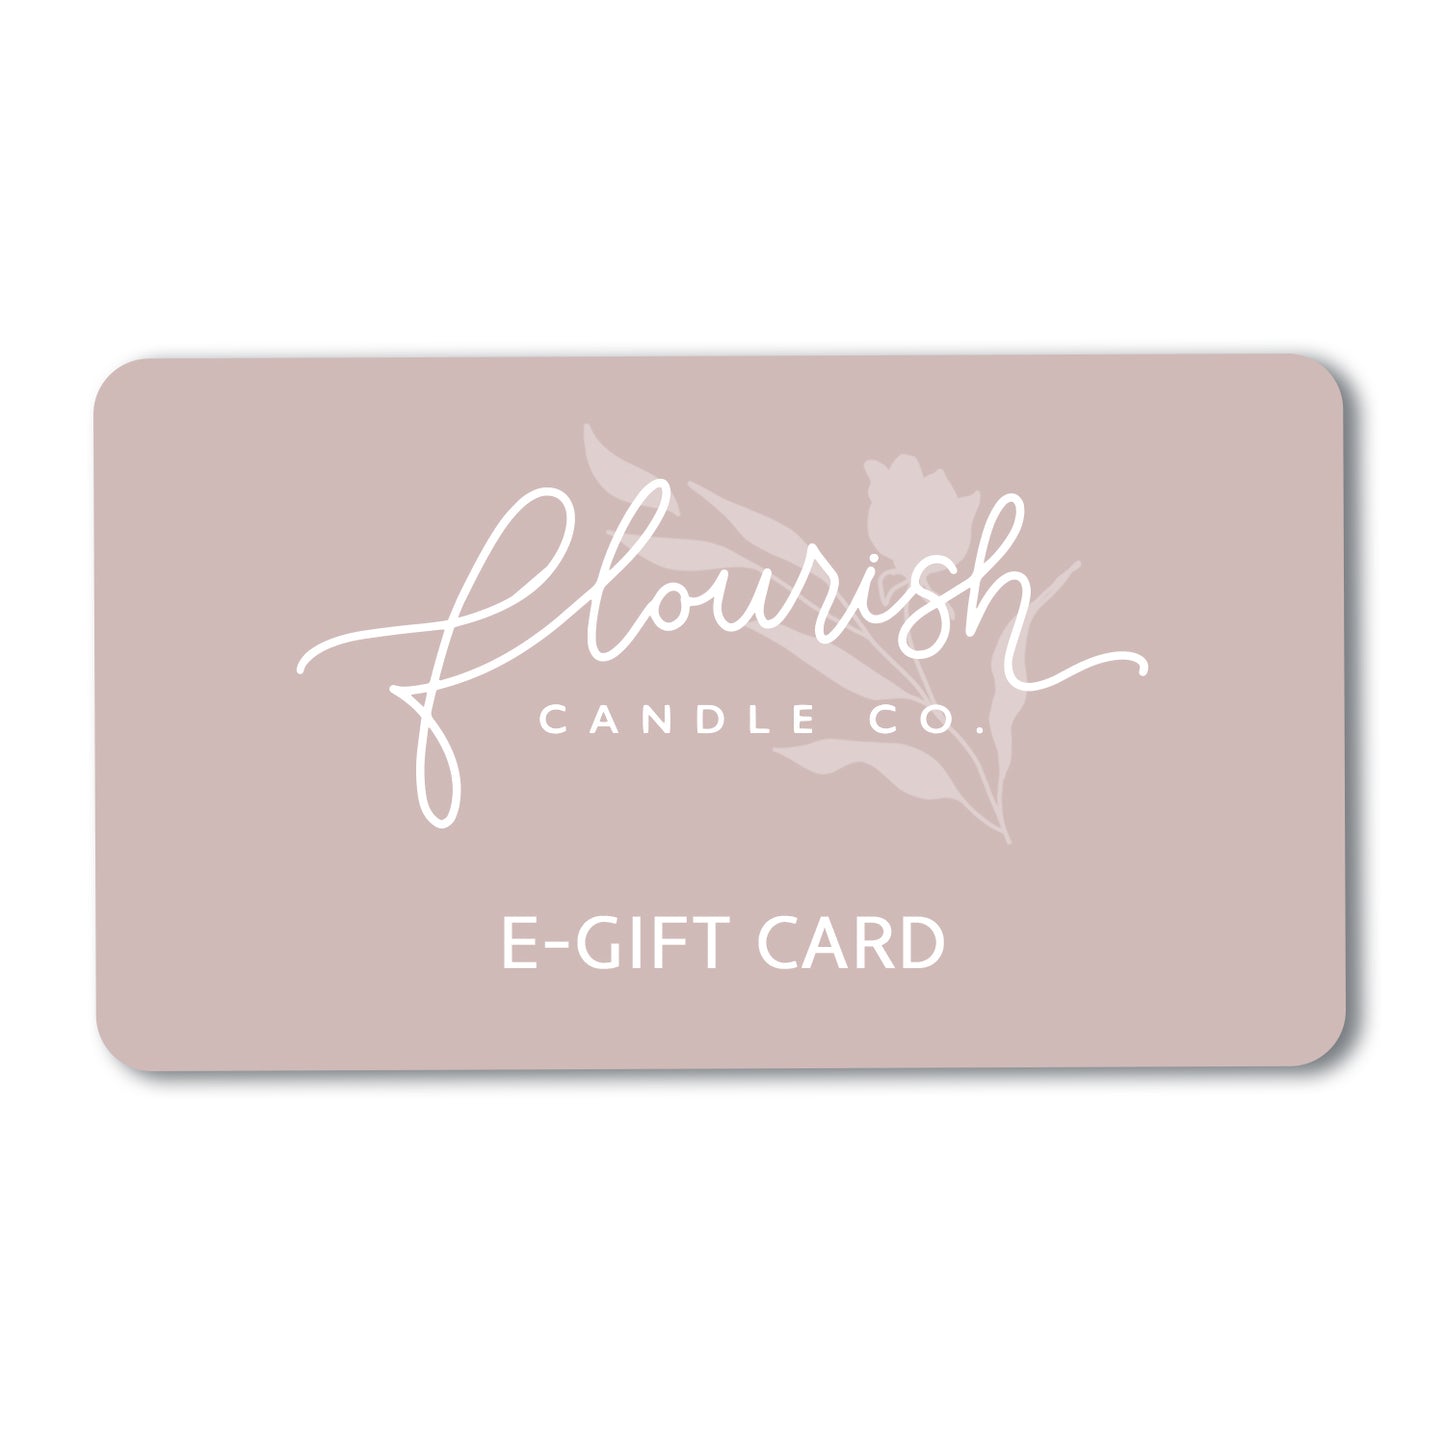 FLOURISH E-GIFT CARD